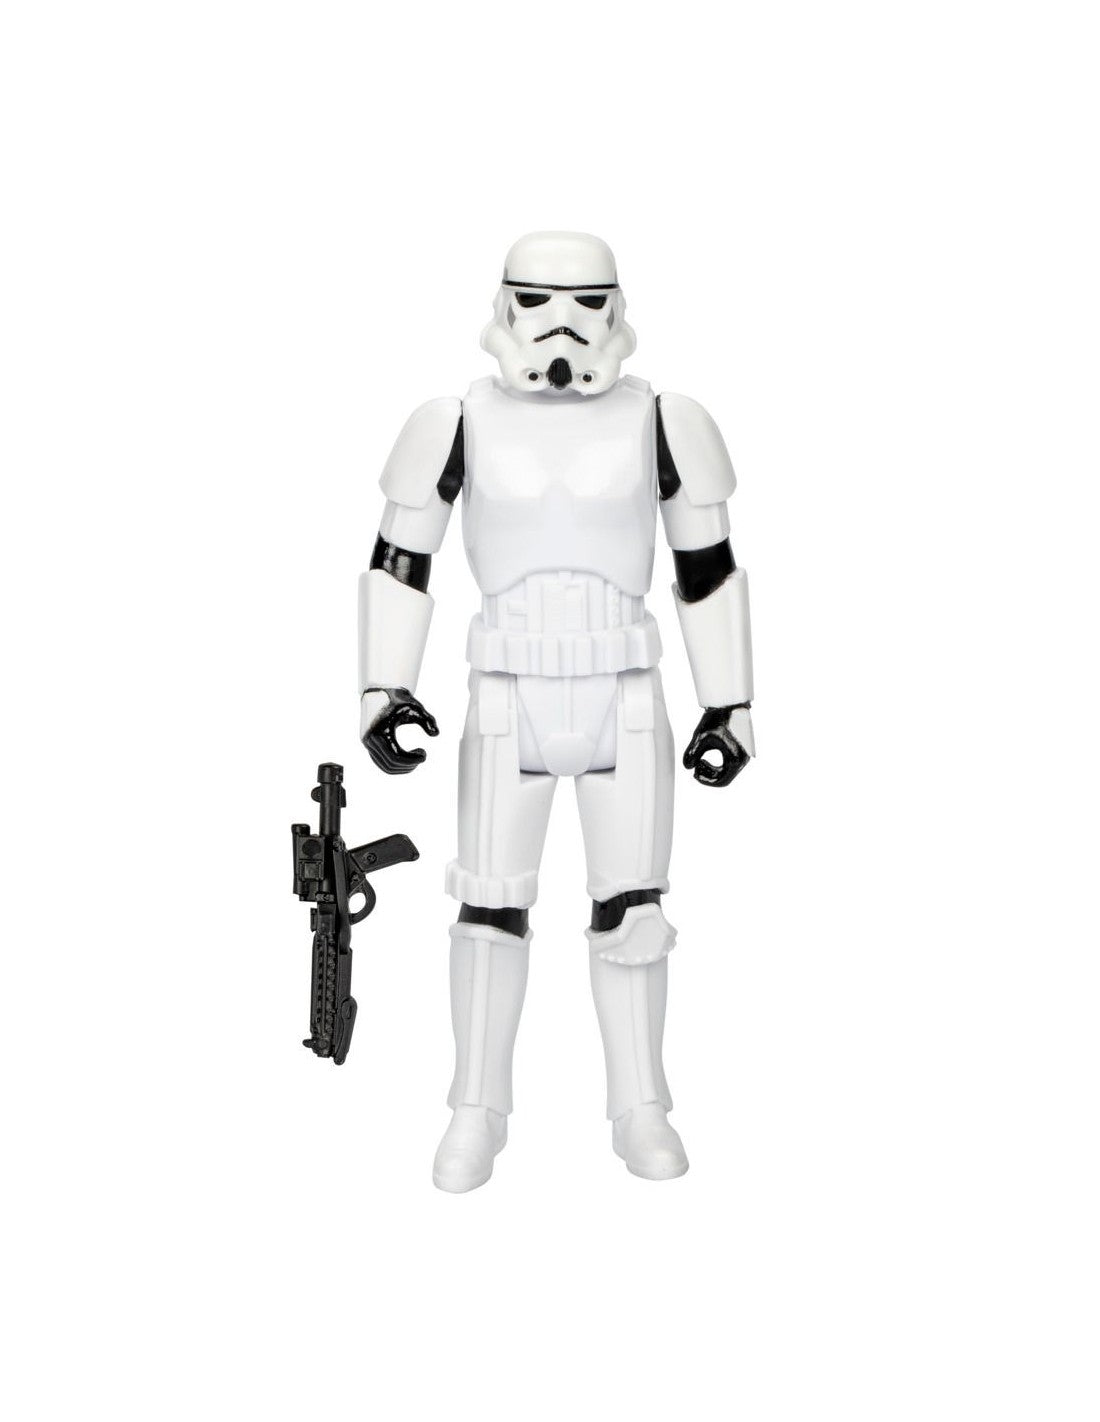 Star Wars StormTrooper 10cm Action Figure